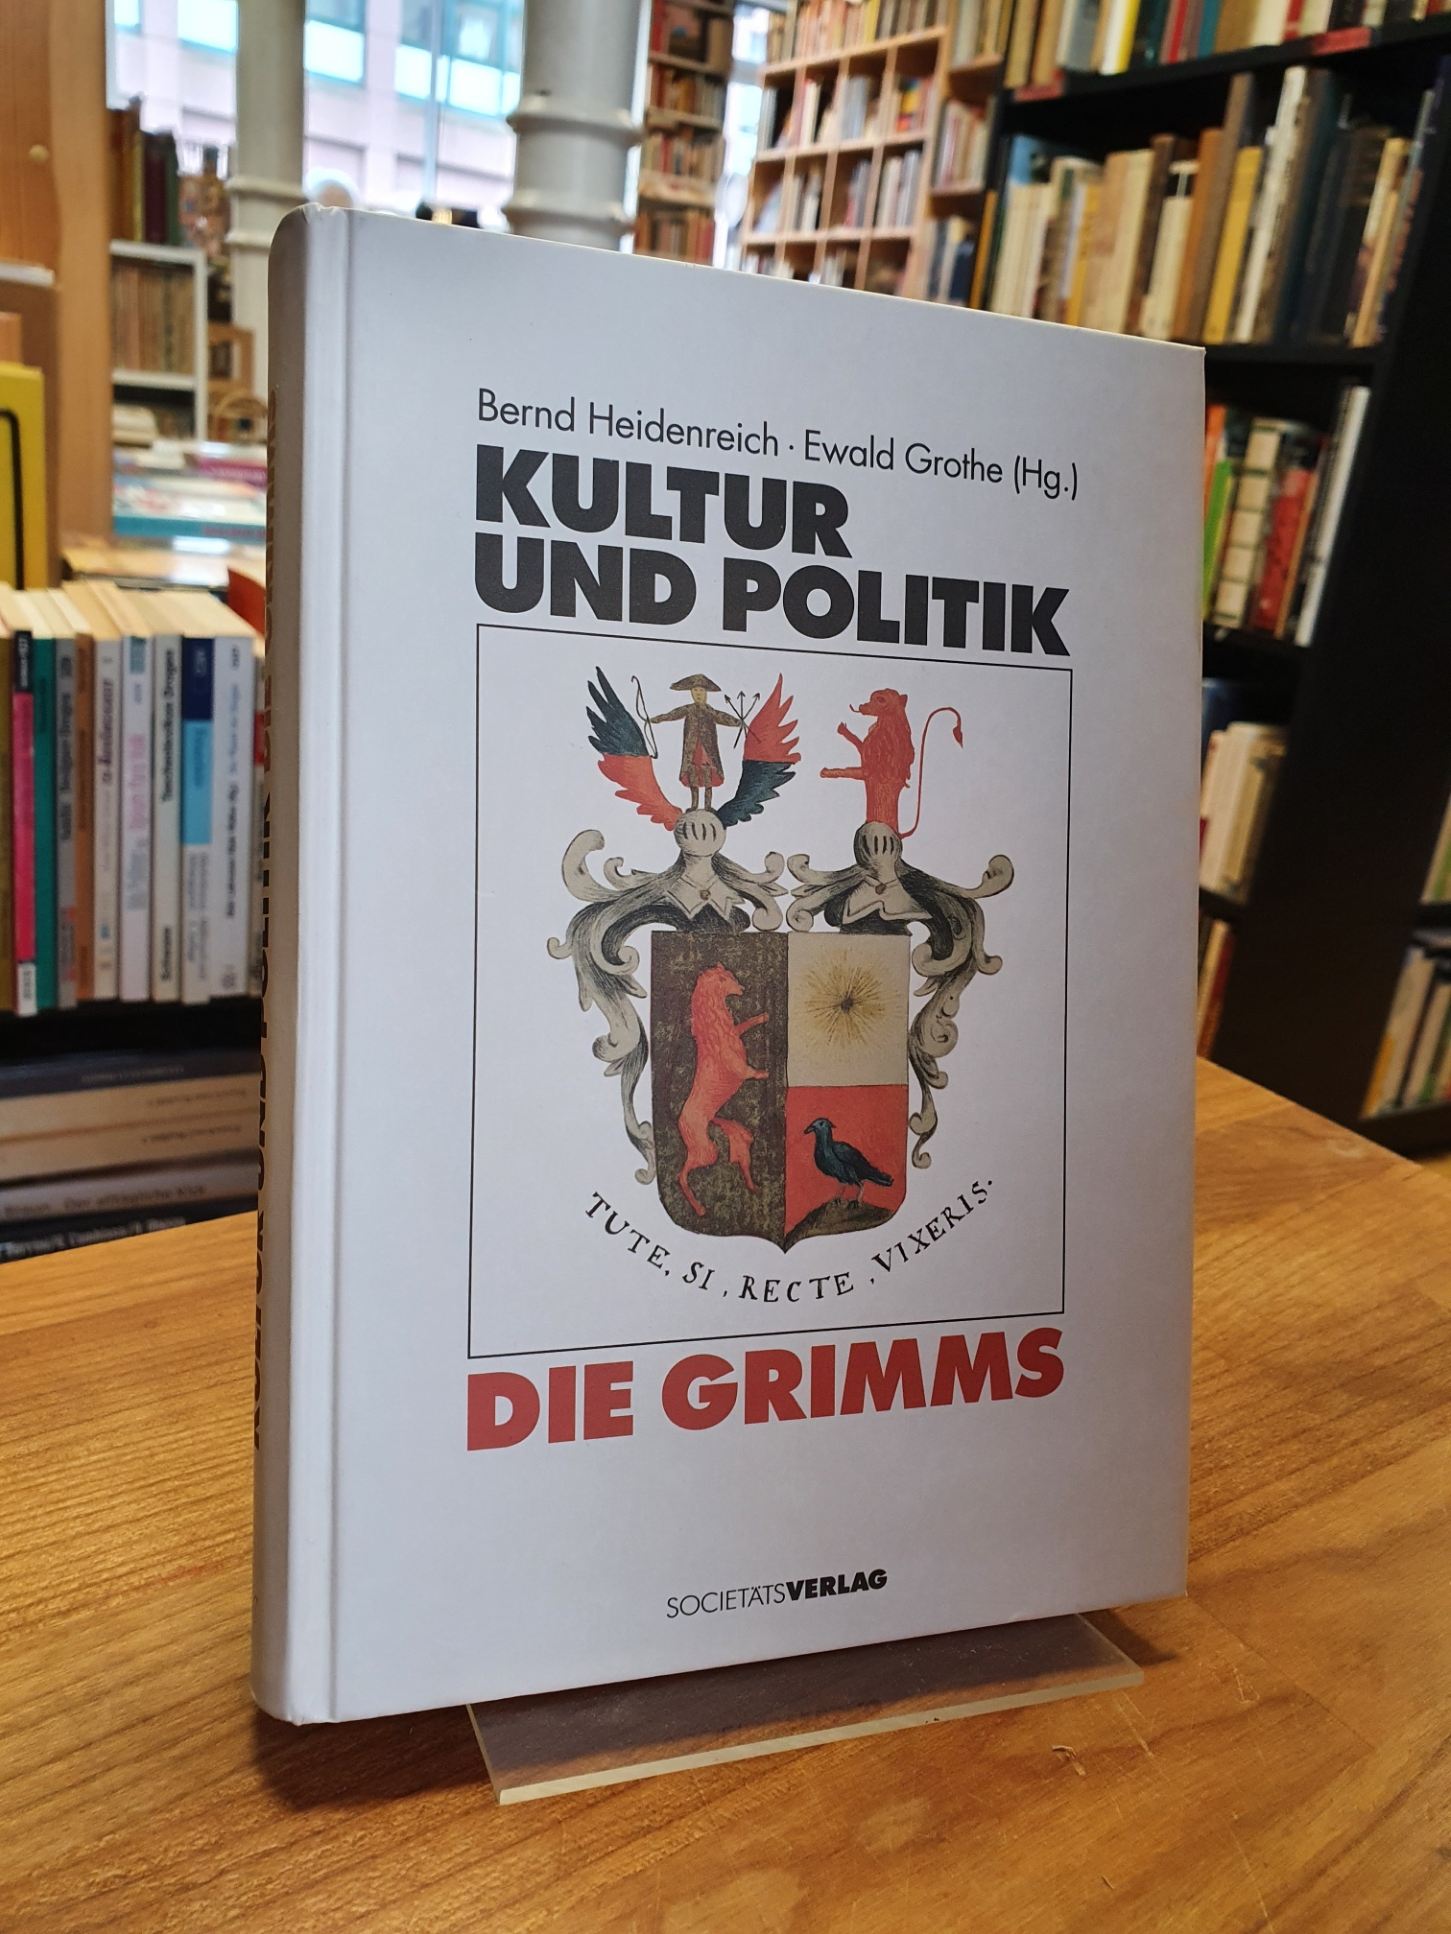 Brüder Grimm (Jacob und Wilhelm) / Heidenreich, Die Grimms – Kultur und Politik,